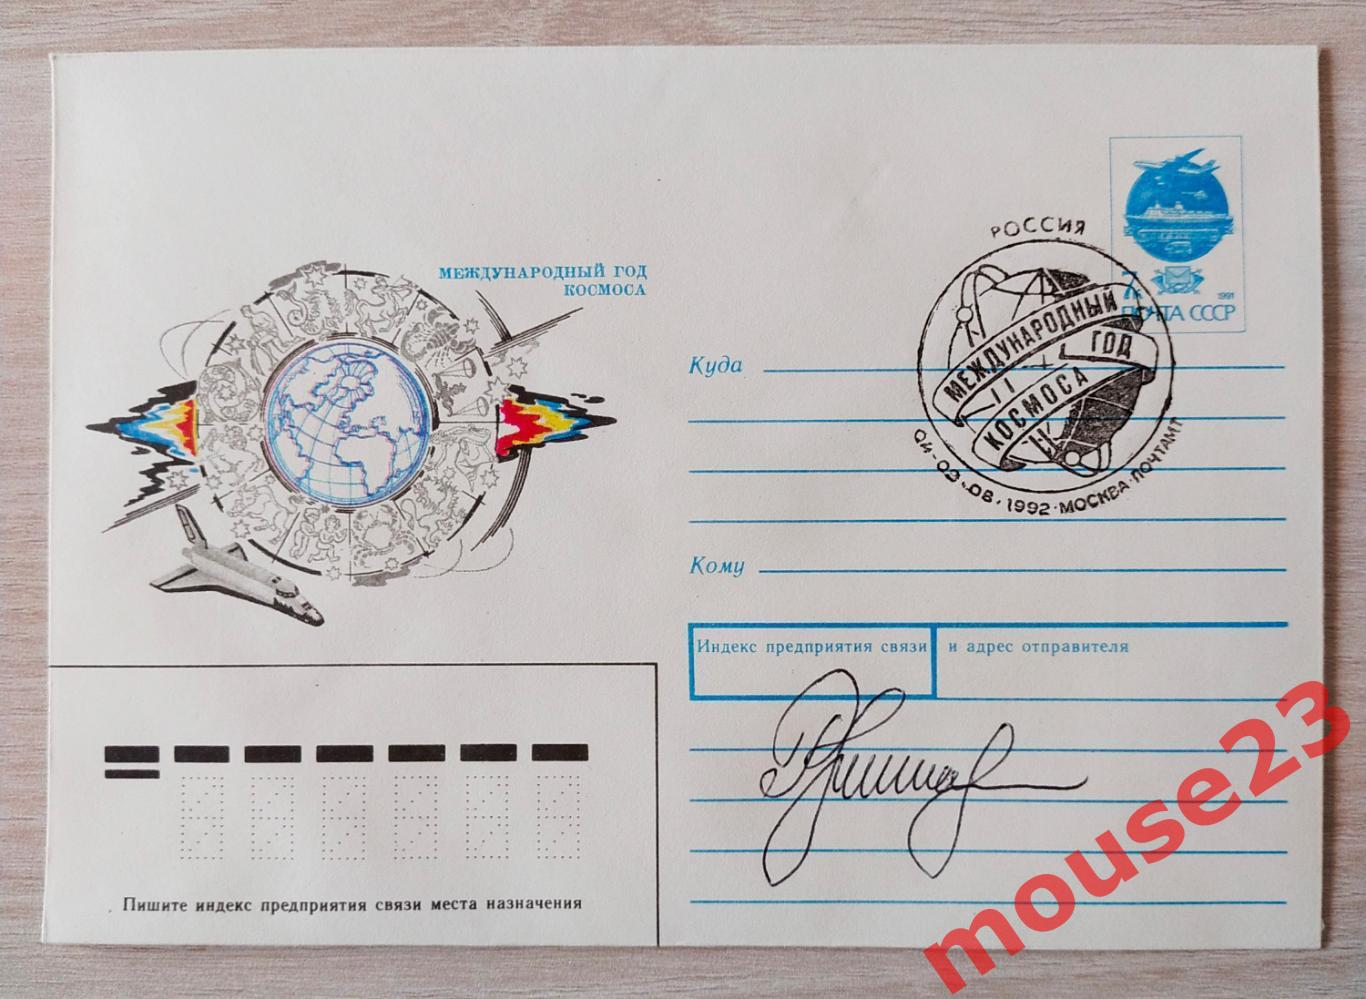 1992 СССР КОСМОС Международный год космоса Автограф космонавта РУКАВИШНИКОВ